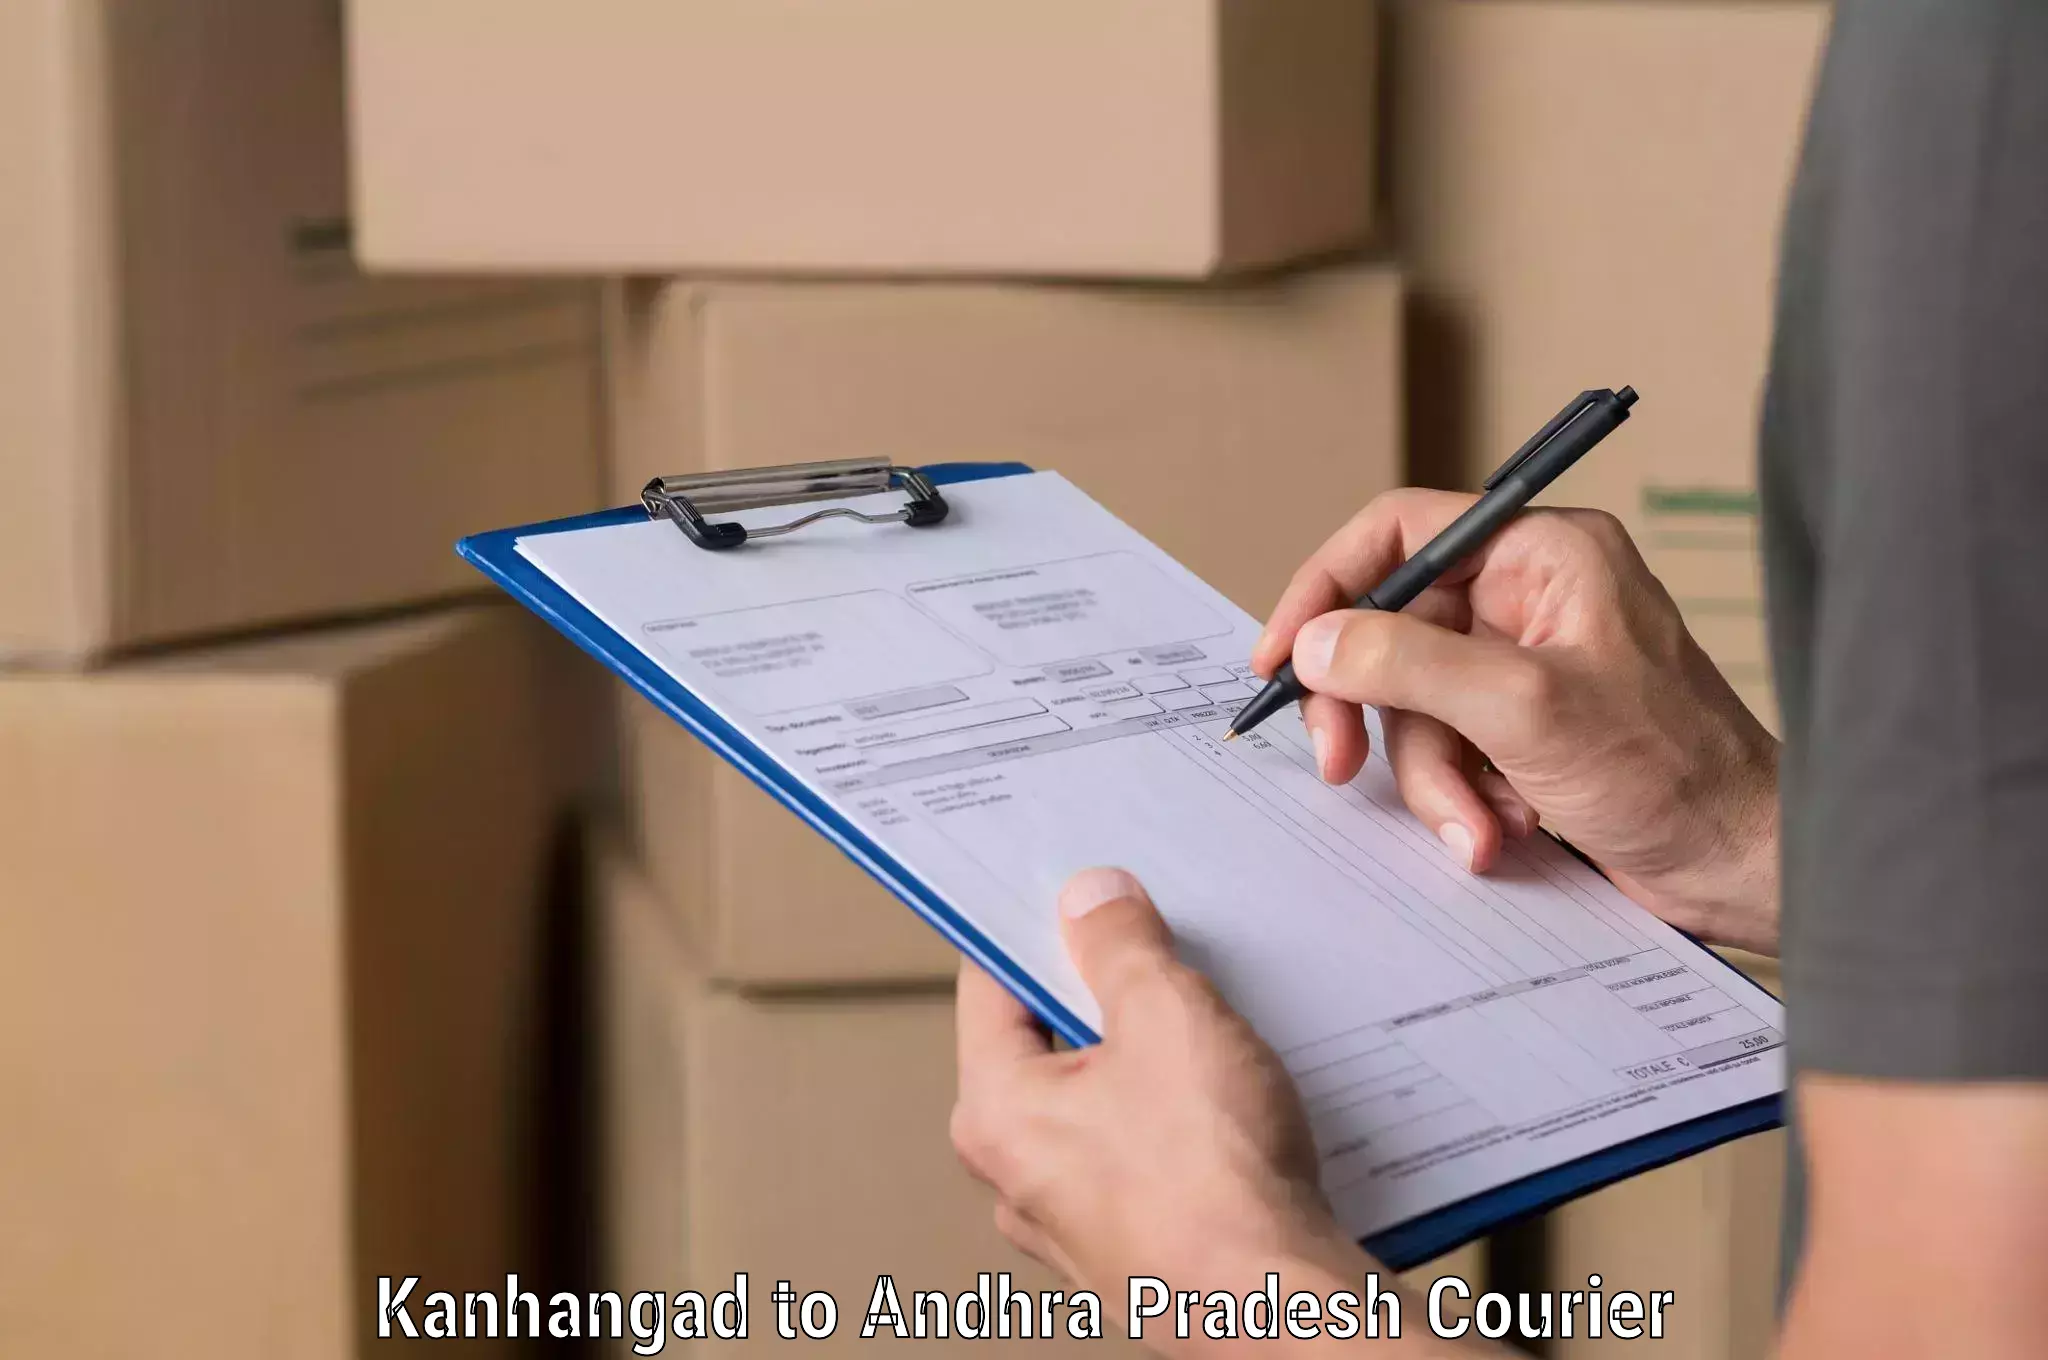 Fragile item shipping Kanhangad to Tadepalligudem